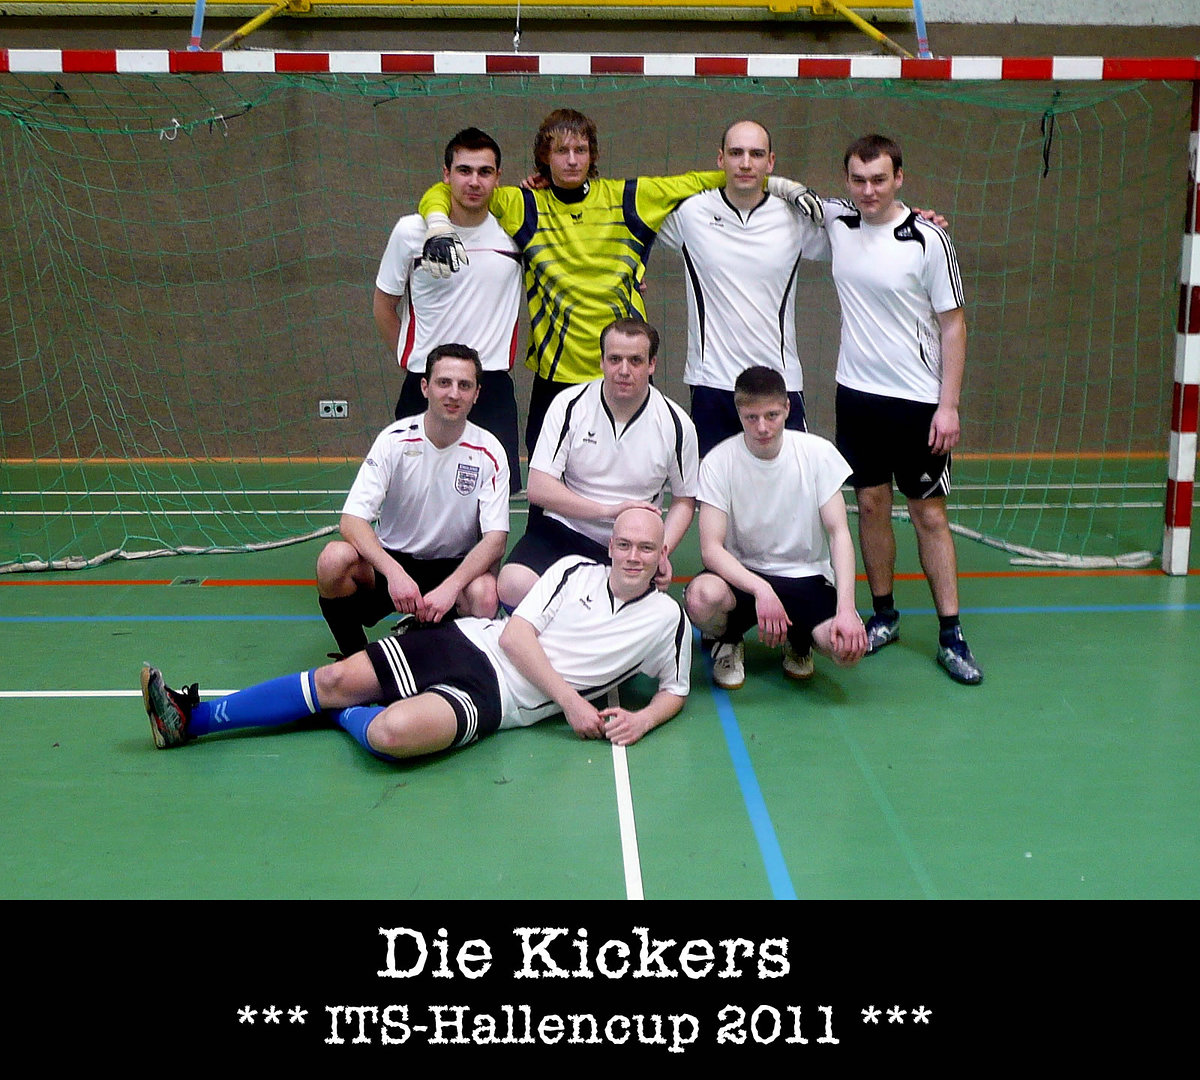 Its hallencup 2011   teamfotos   die kickers retina